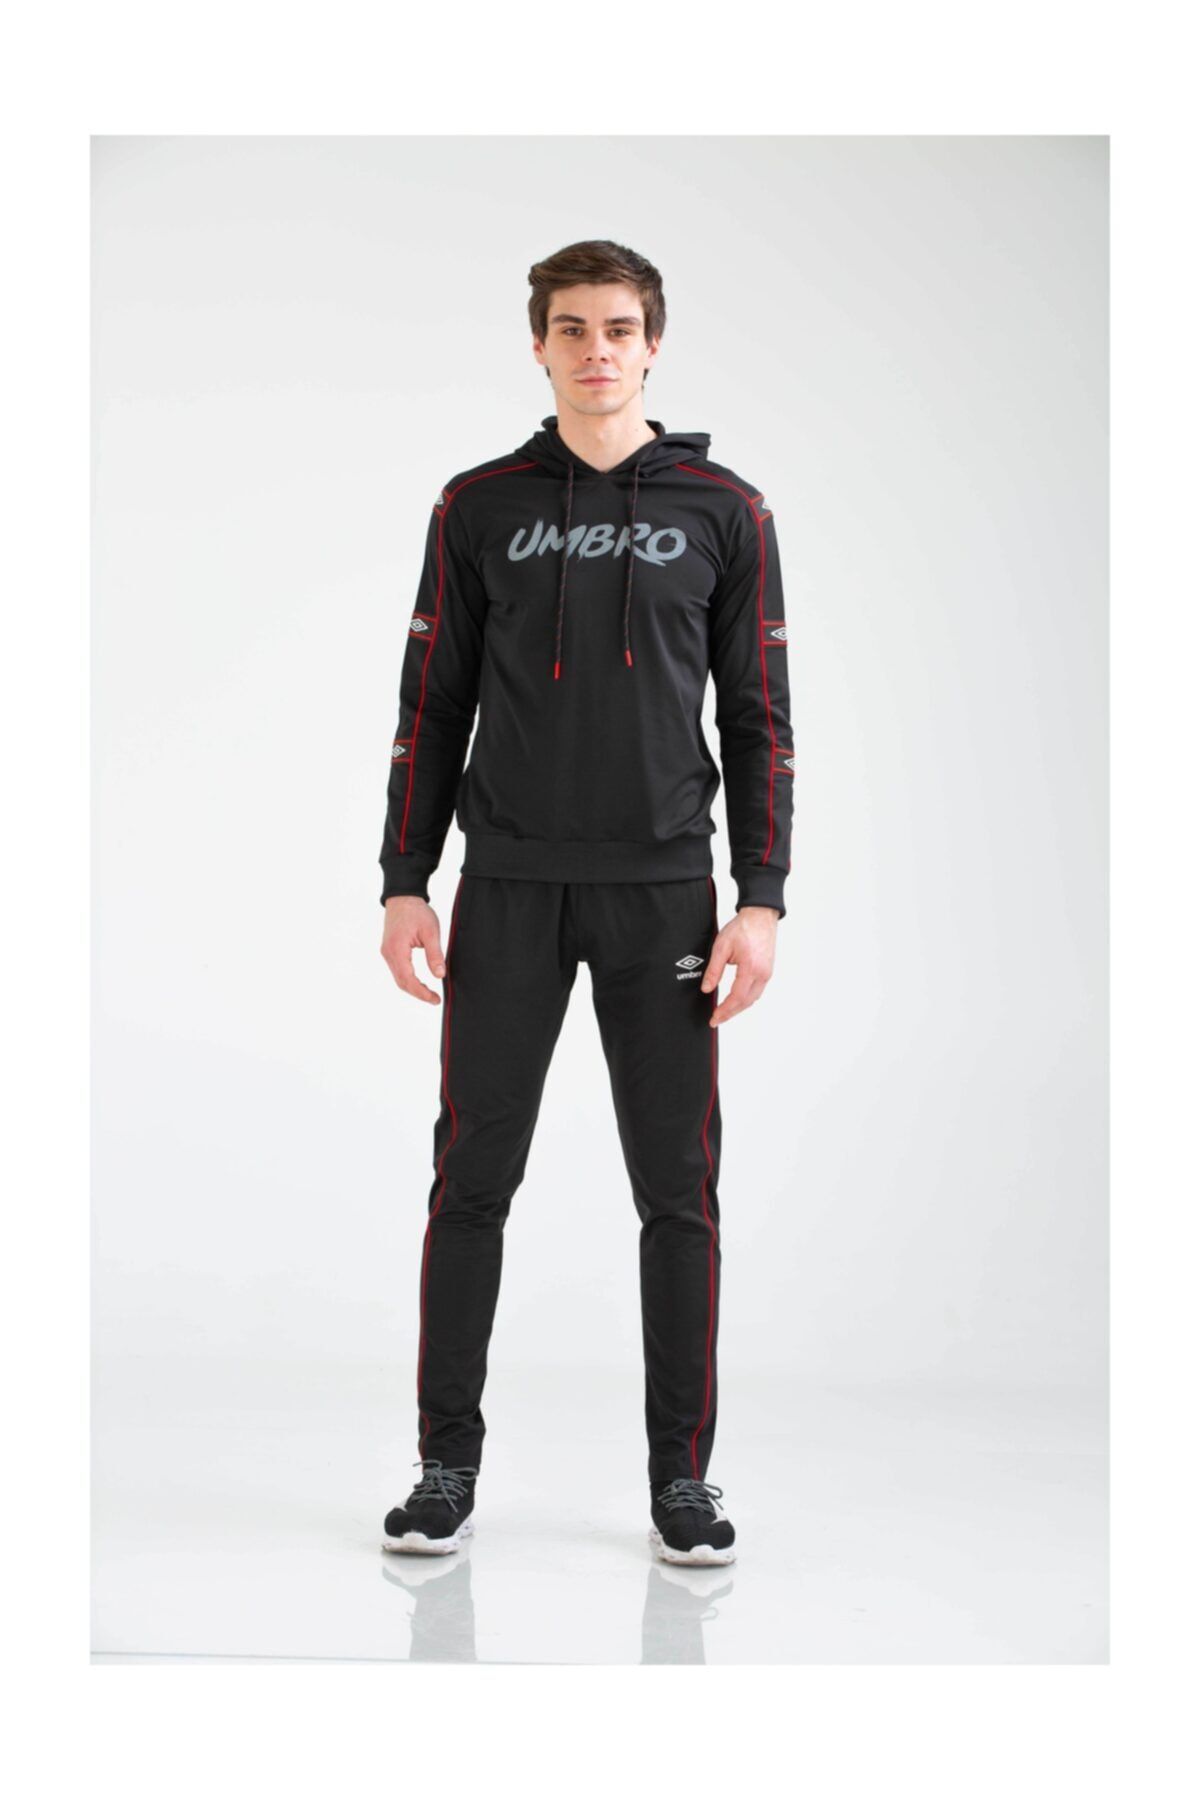 Umbro Erkek Eşofman Takımı Ta-0020 Salto Track Suit